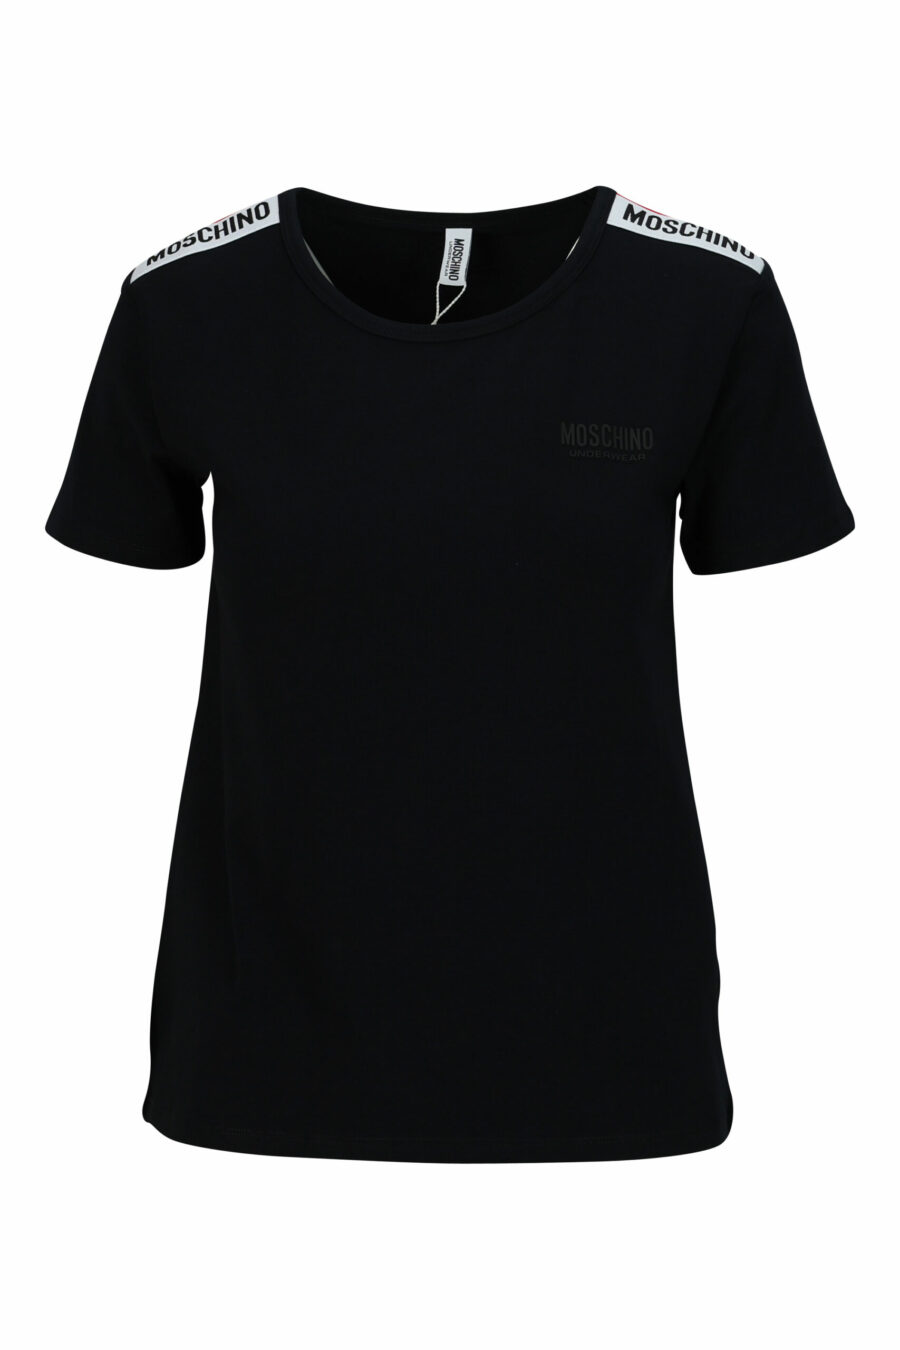 Schwarzes T-Shirt mit monochromem Logo-Schulterband - 667113696690 skaliert